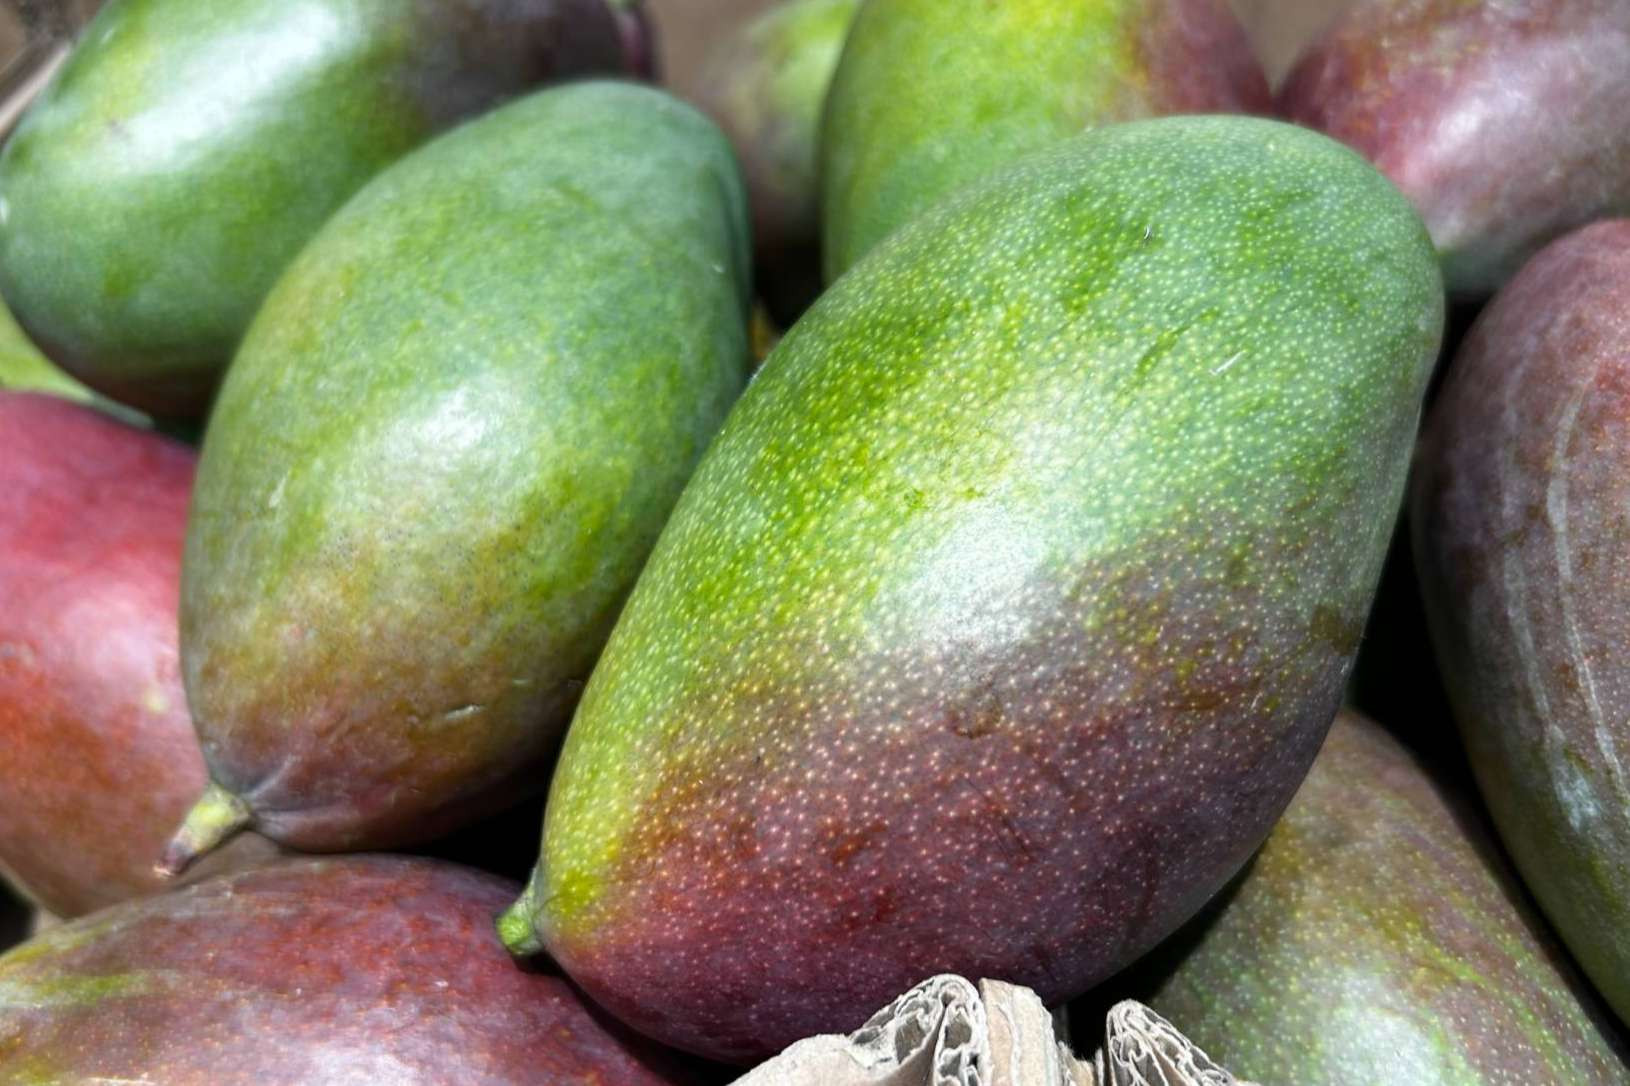  Baor Products presenta su concentrado de mango clarificado 65 brix y concentrado de mango 50 brix cloudy 